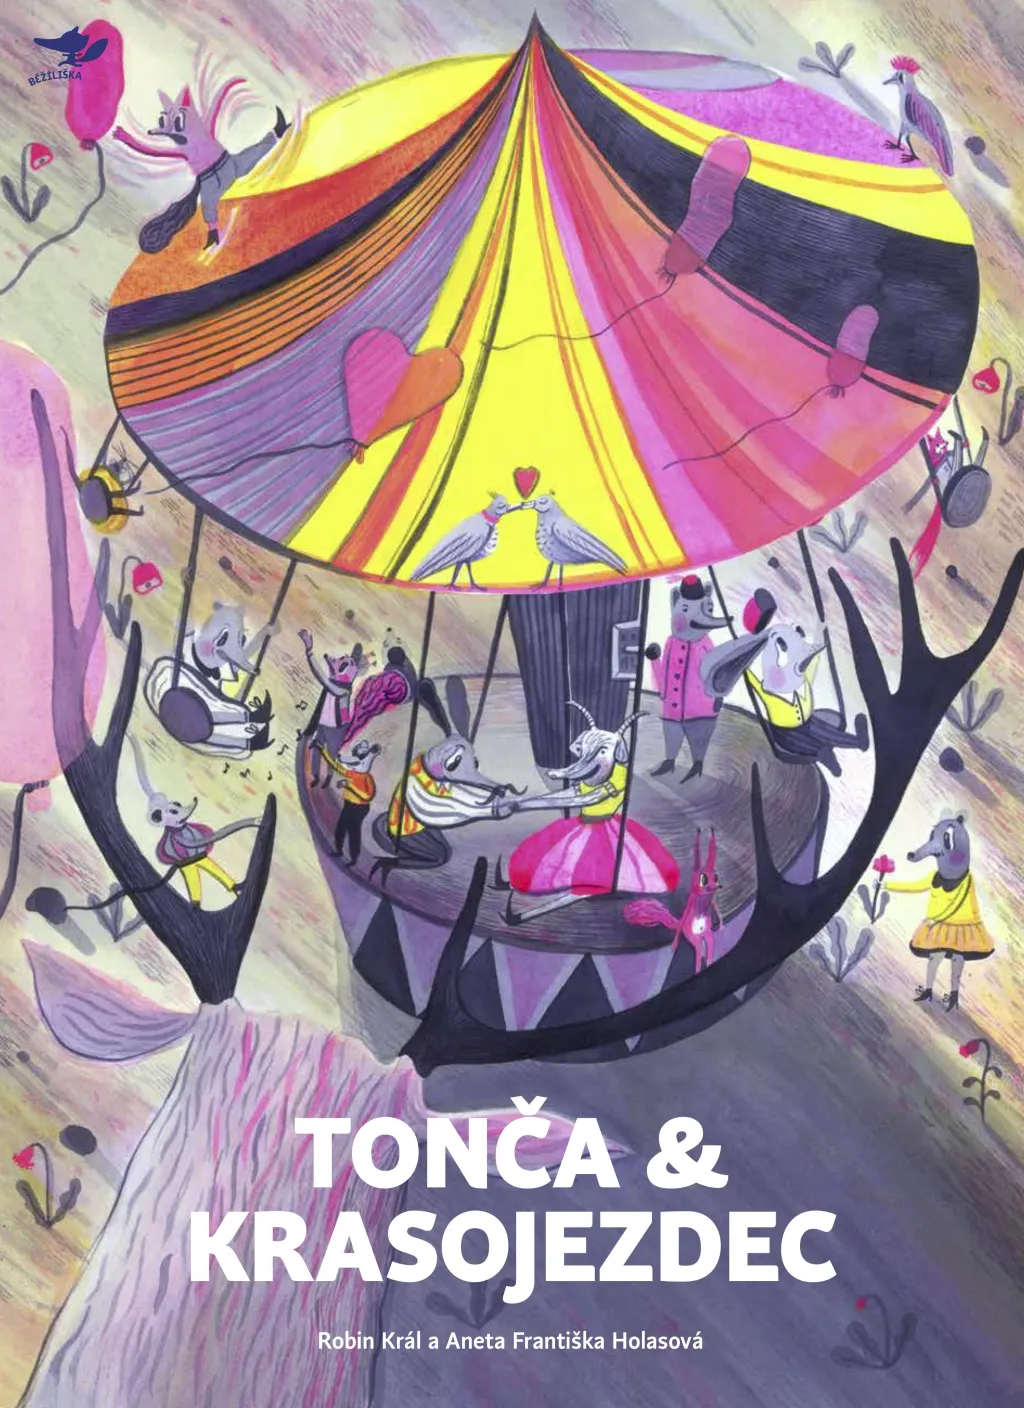 Porota výtvarné části se v kategorii knih pro mladší děti rozhodla ocenit Anetu Františku Holasovou za ilustrace k leporelu Robina Krále Tonča a krasojezdec